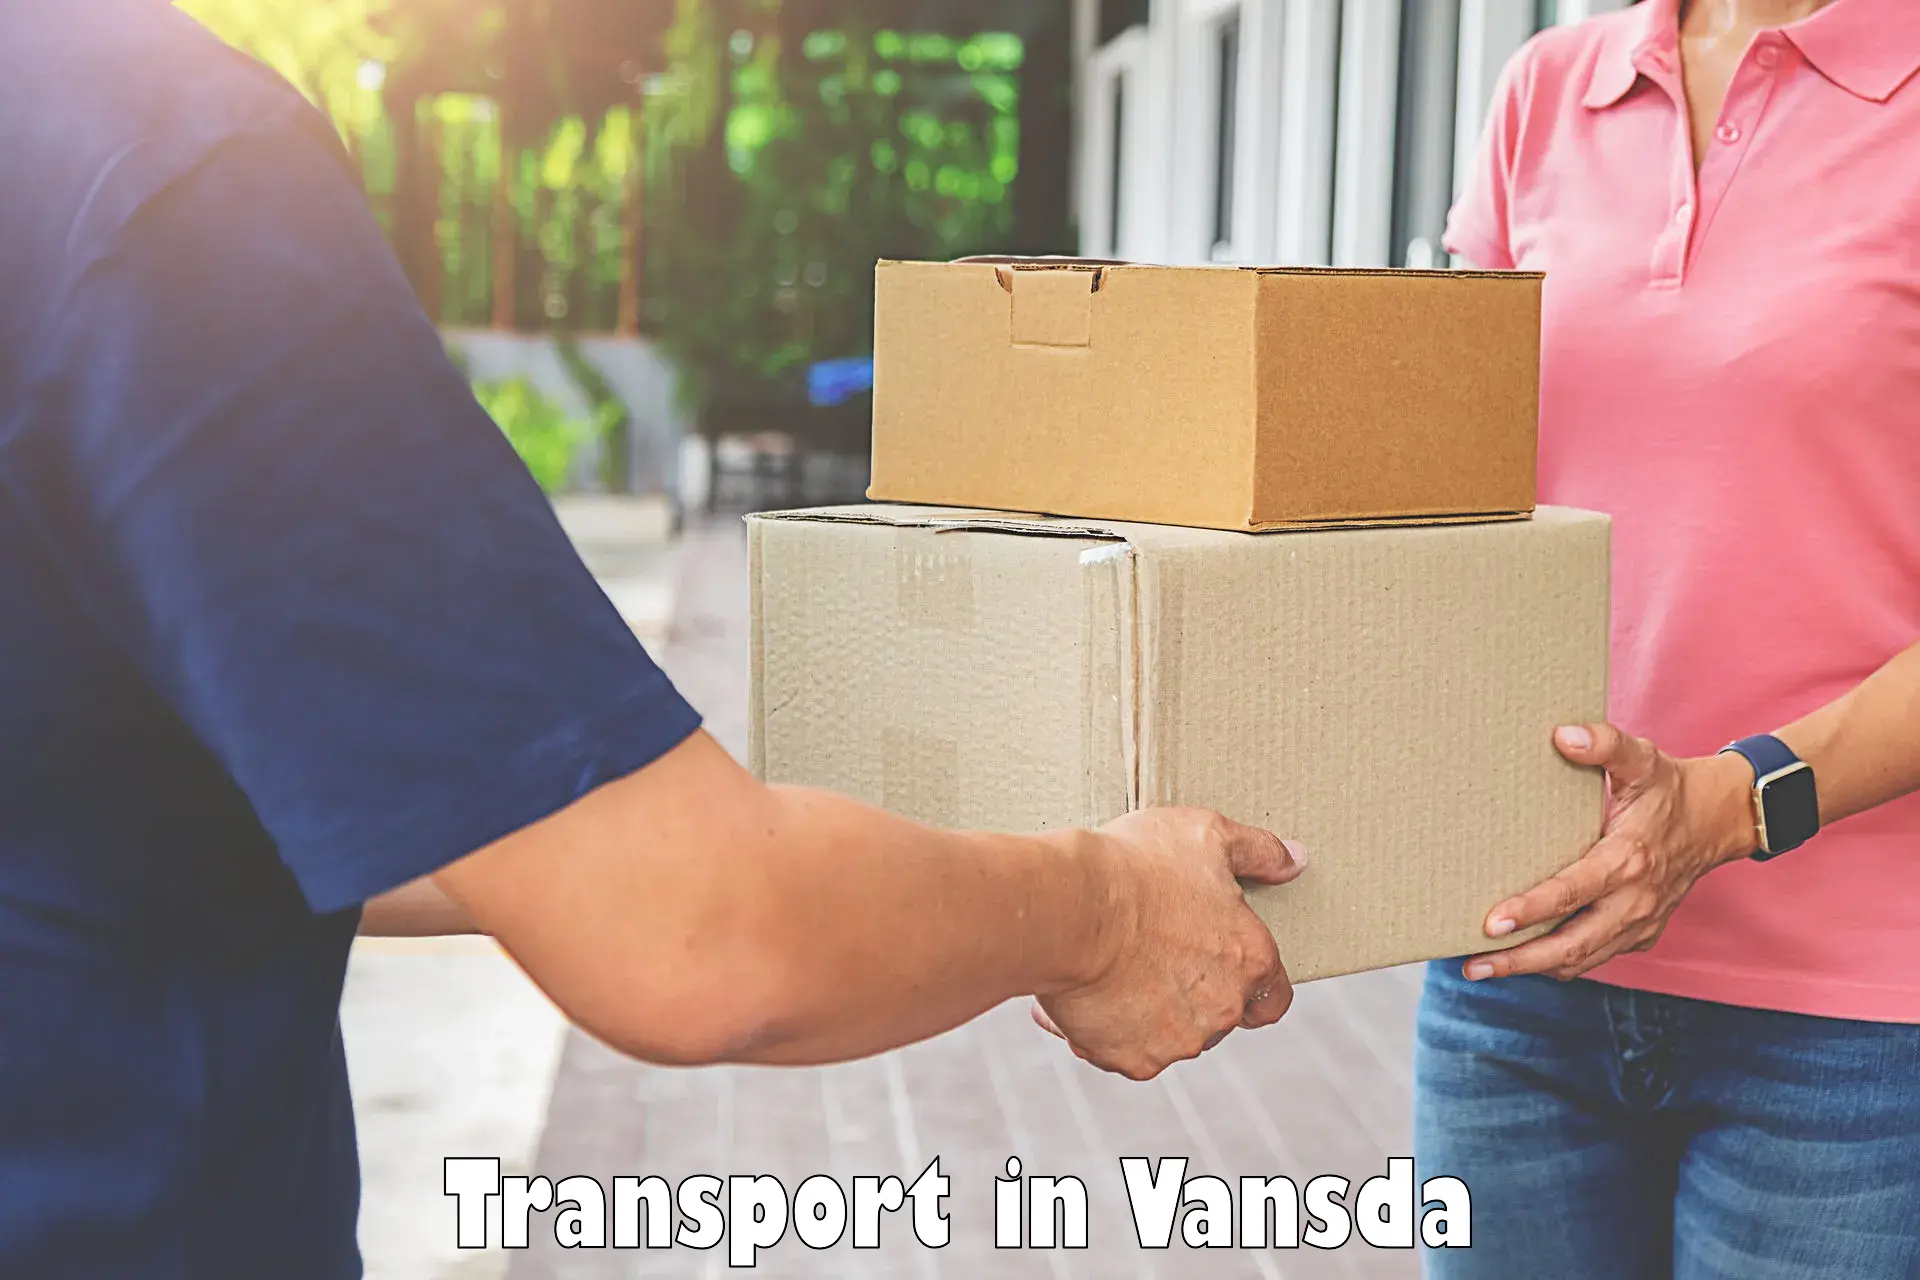 Parcel transport services in Vansda